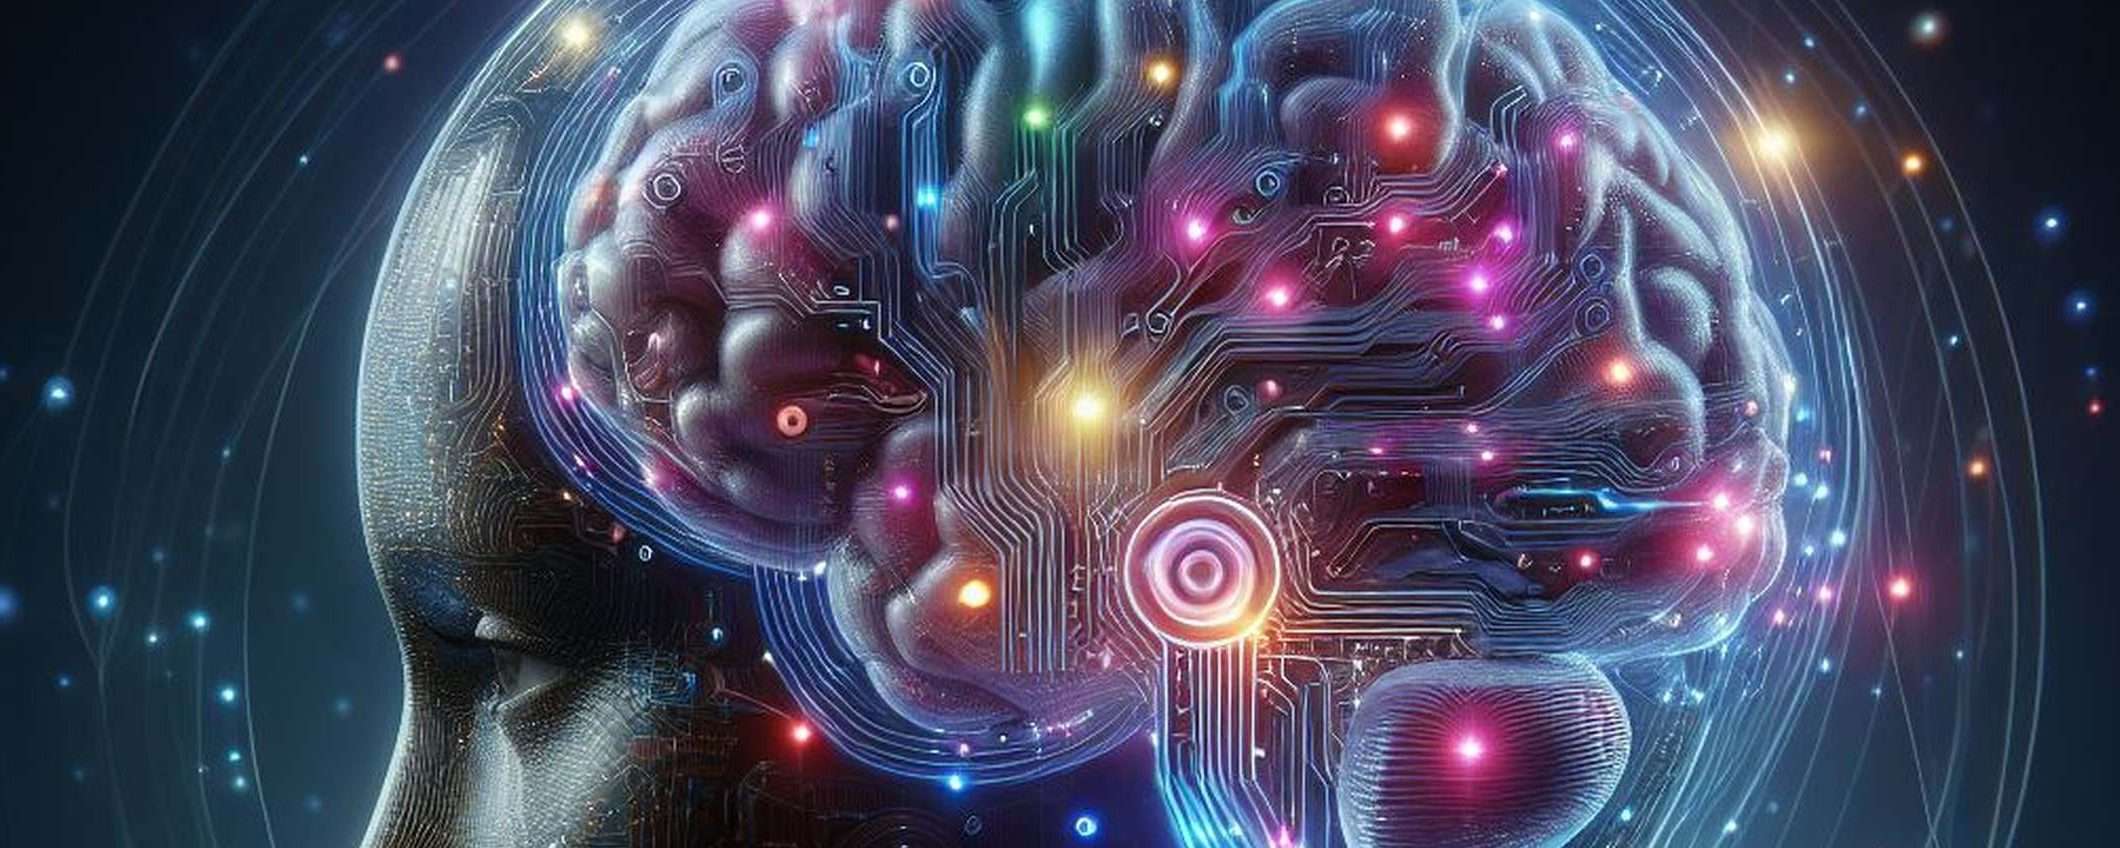 BrainGPT converte i segnali del cervello in testo